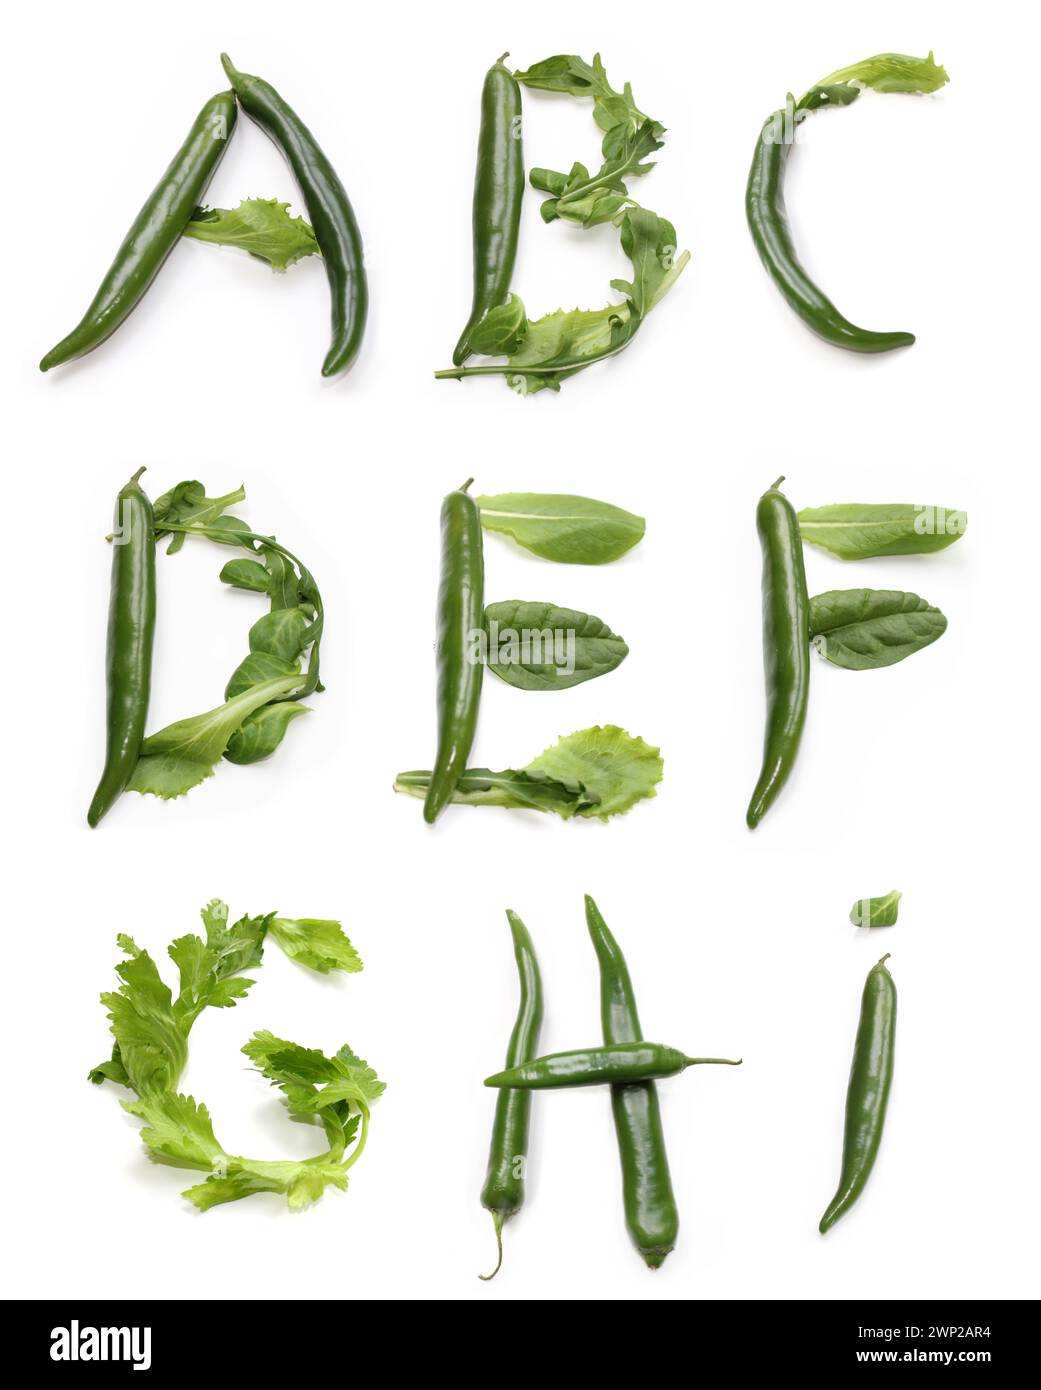 letters a b c d e f g h i from chili peppers, green salad leaf for text word, poster, brunch banner, bowls menu card, vegan bowl, vegetarian food bowl Stock Photo